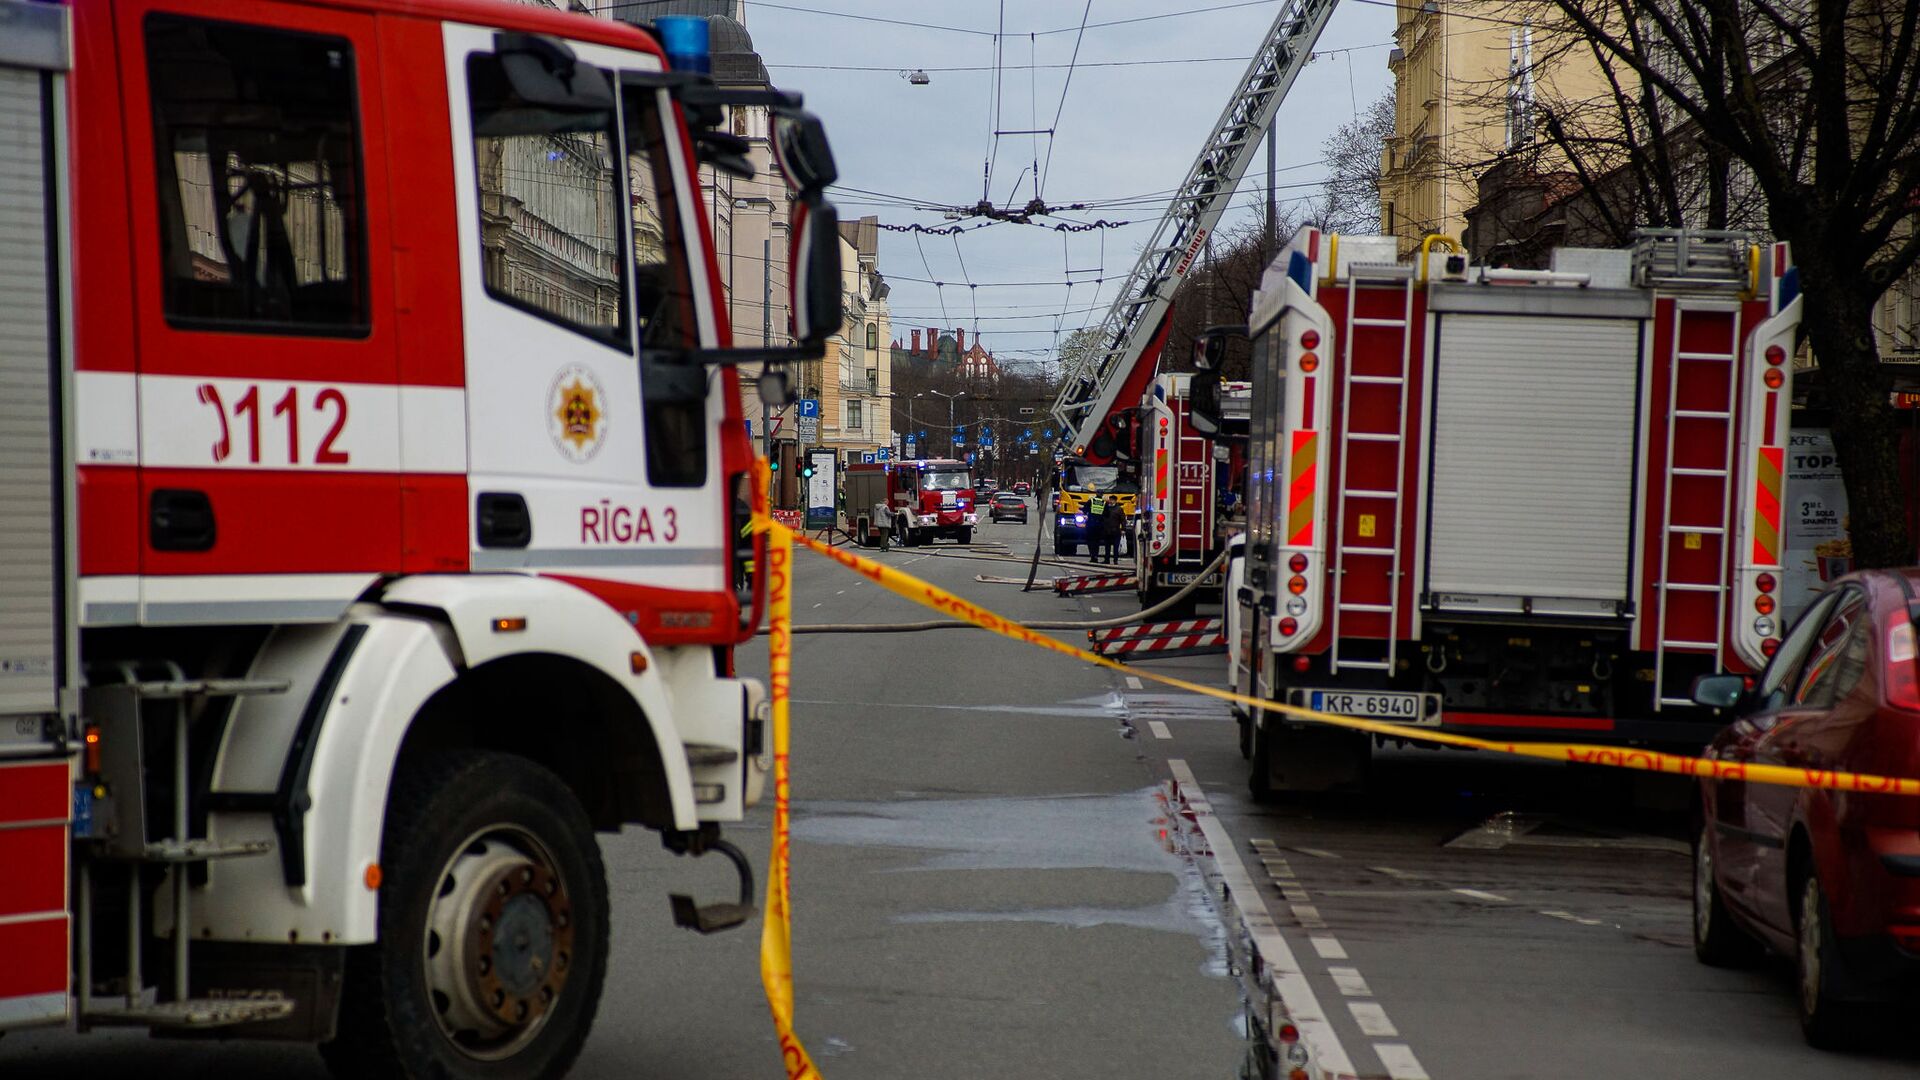 Пожар в хостеле на улице Меркеля, в центре Риги - Sputnik Латвия, 1920, 03.06.2021